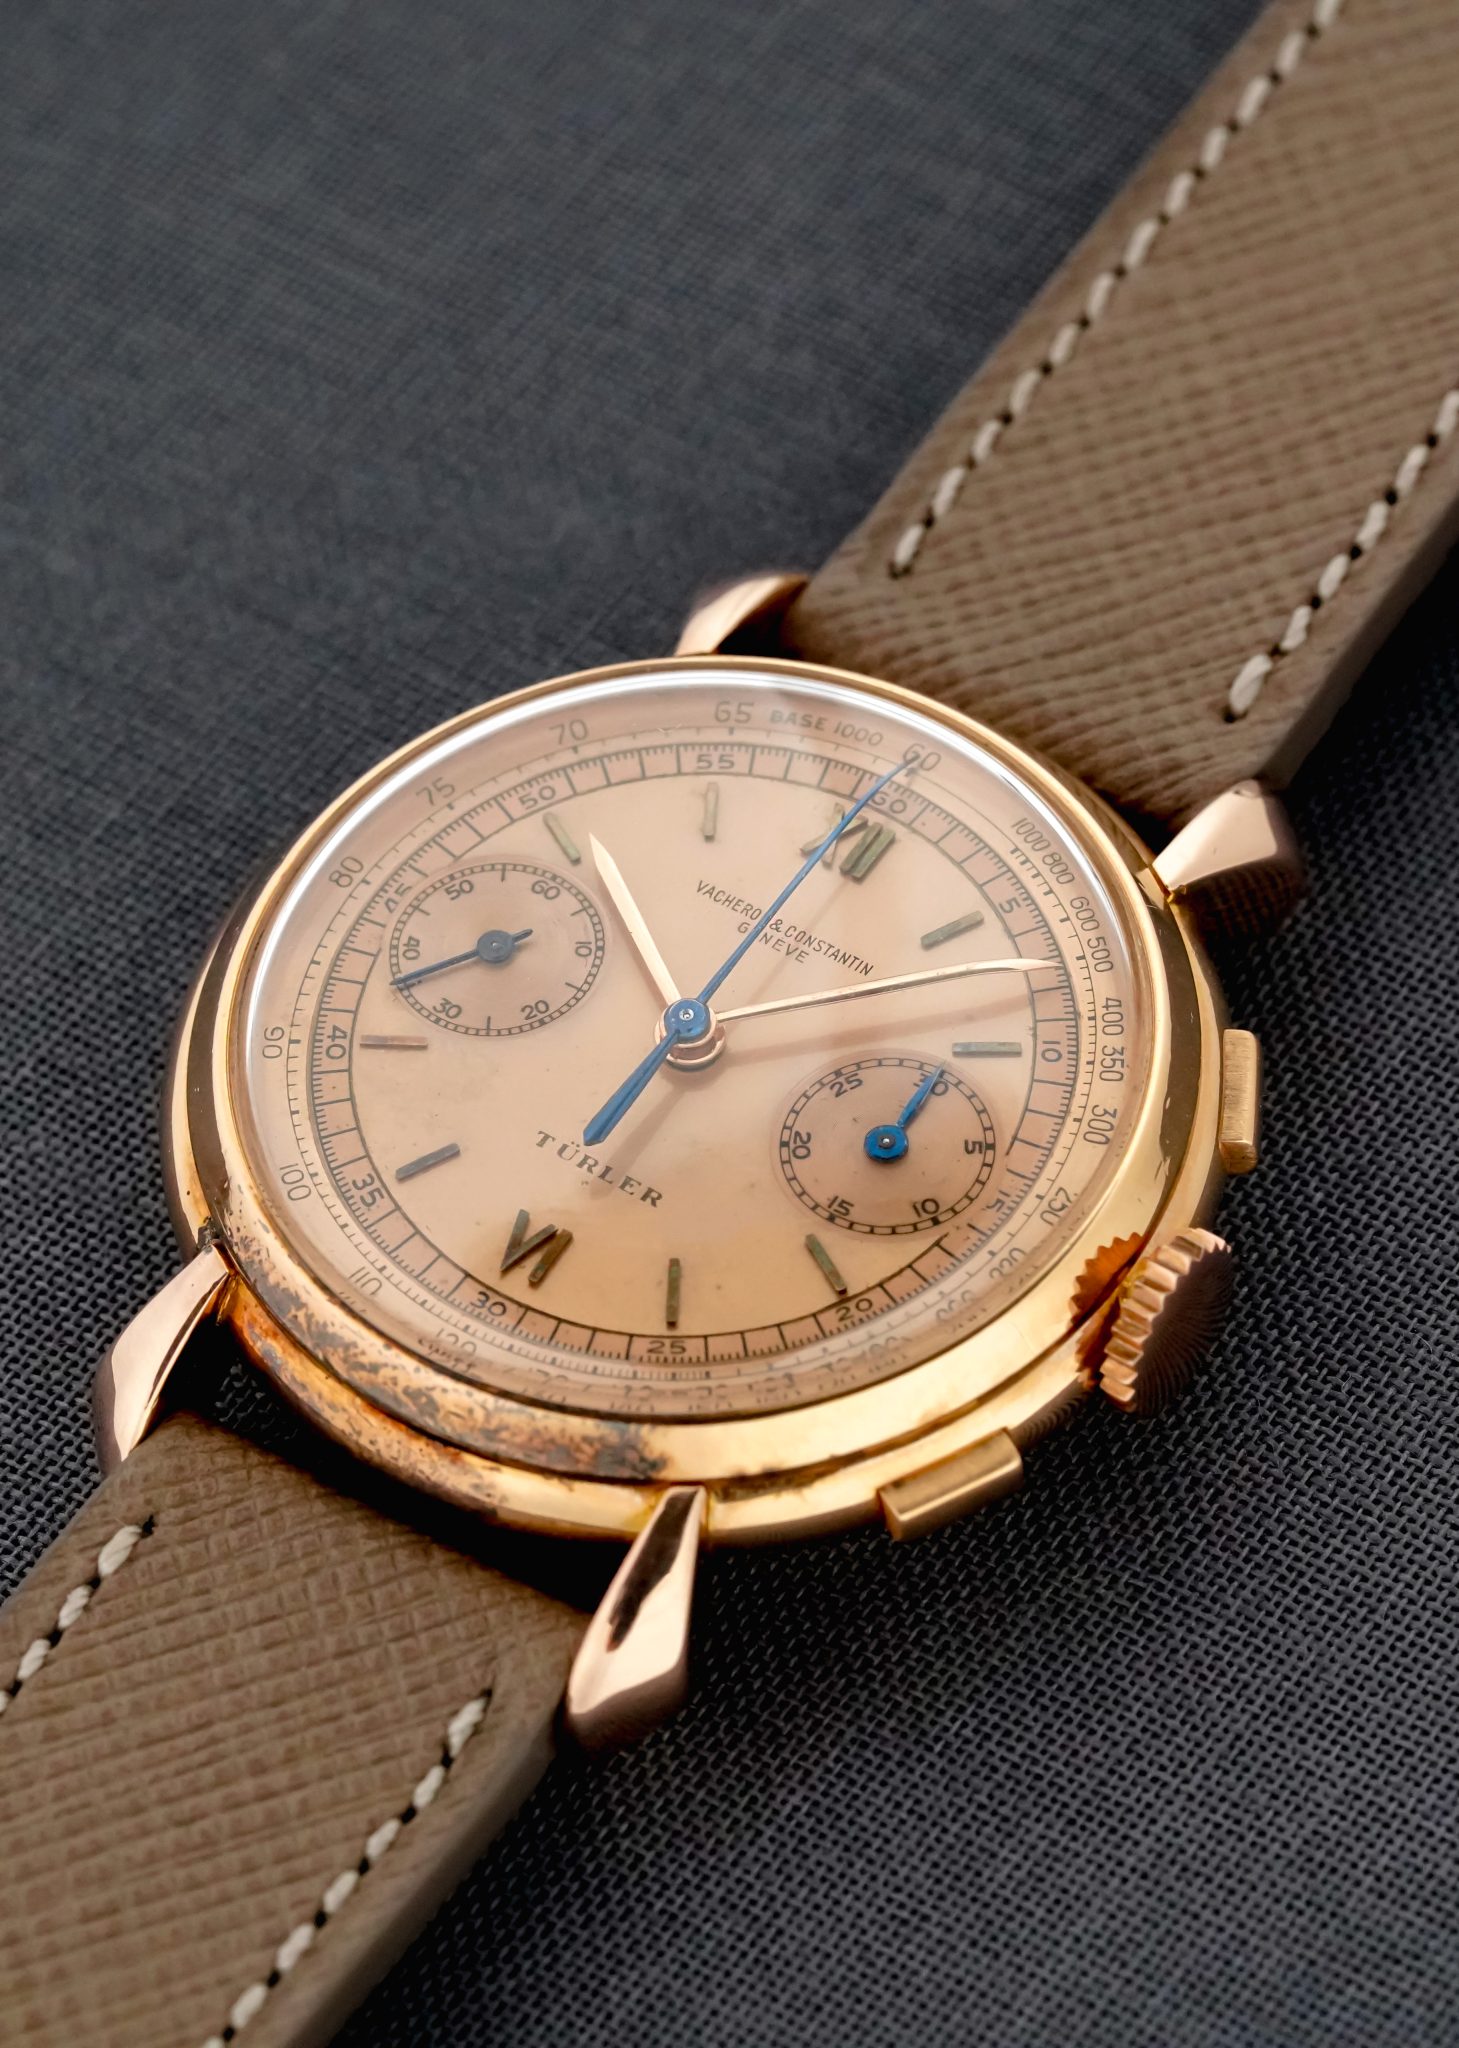 4178-Vacheron-Constantin-Chronograph-Pink-Gold-Turler-Dial